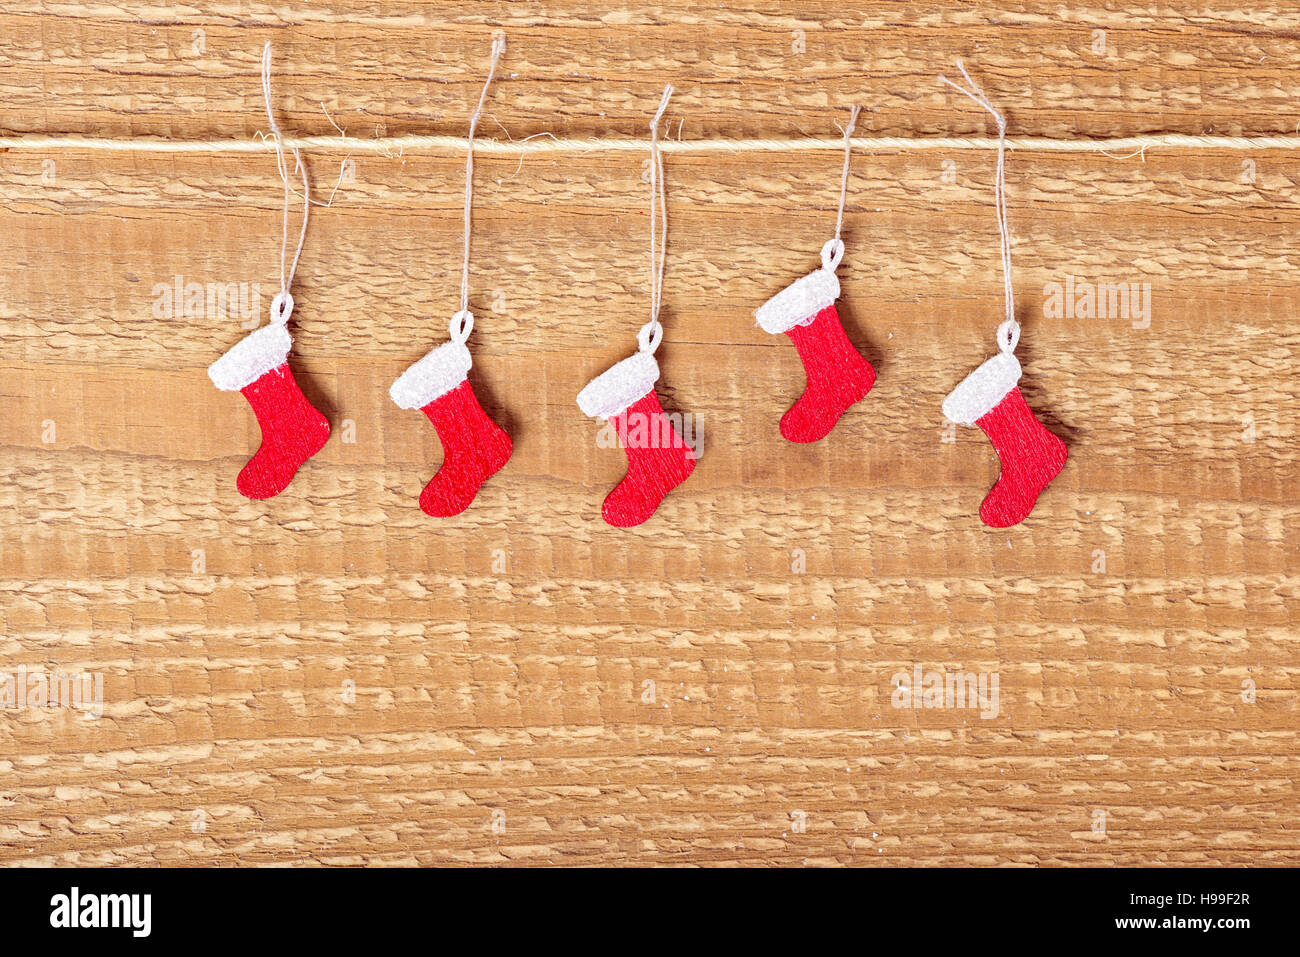 Einfaches Konzept Weihnachten dekoriert rot lackierte Stiefel auf hölzernen Hintergrund, mock-up Design, Nahaufnahme Stockfoto